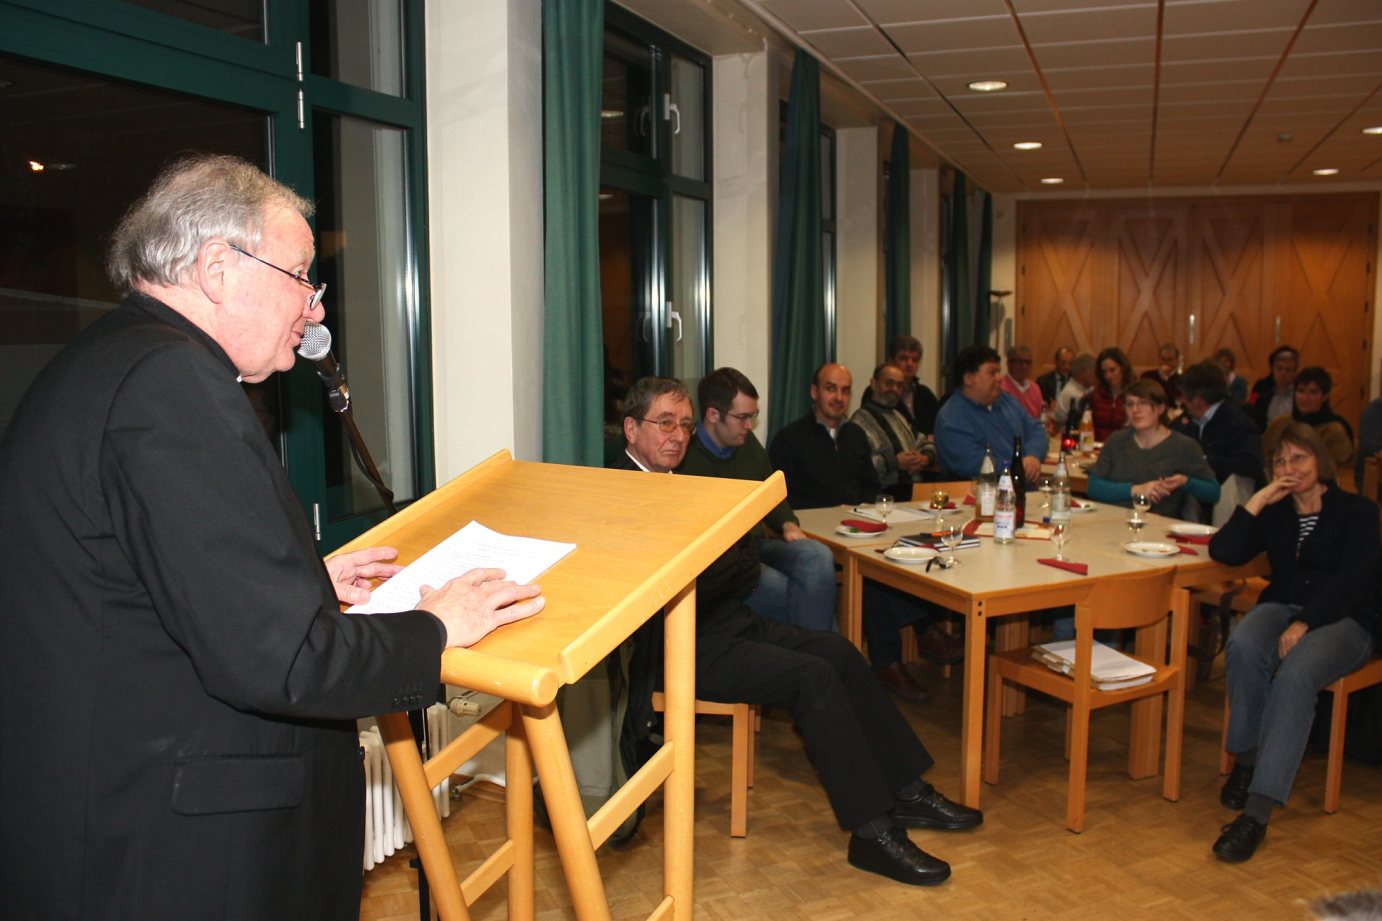 Mainz, 21.11.2012: Generalvikar Dietmar Giebelmann (l.) bei seinem Vortrag zum Abschluss der Visitation im Dekanat Mainz-Stadt, Bezirk 3. (c) Bistum Mainz / Blum